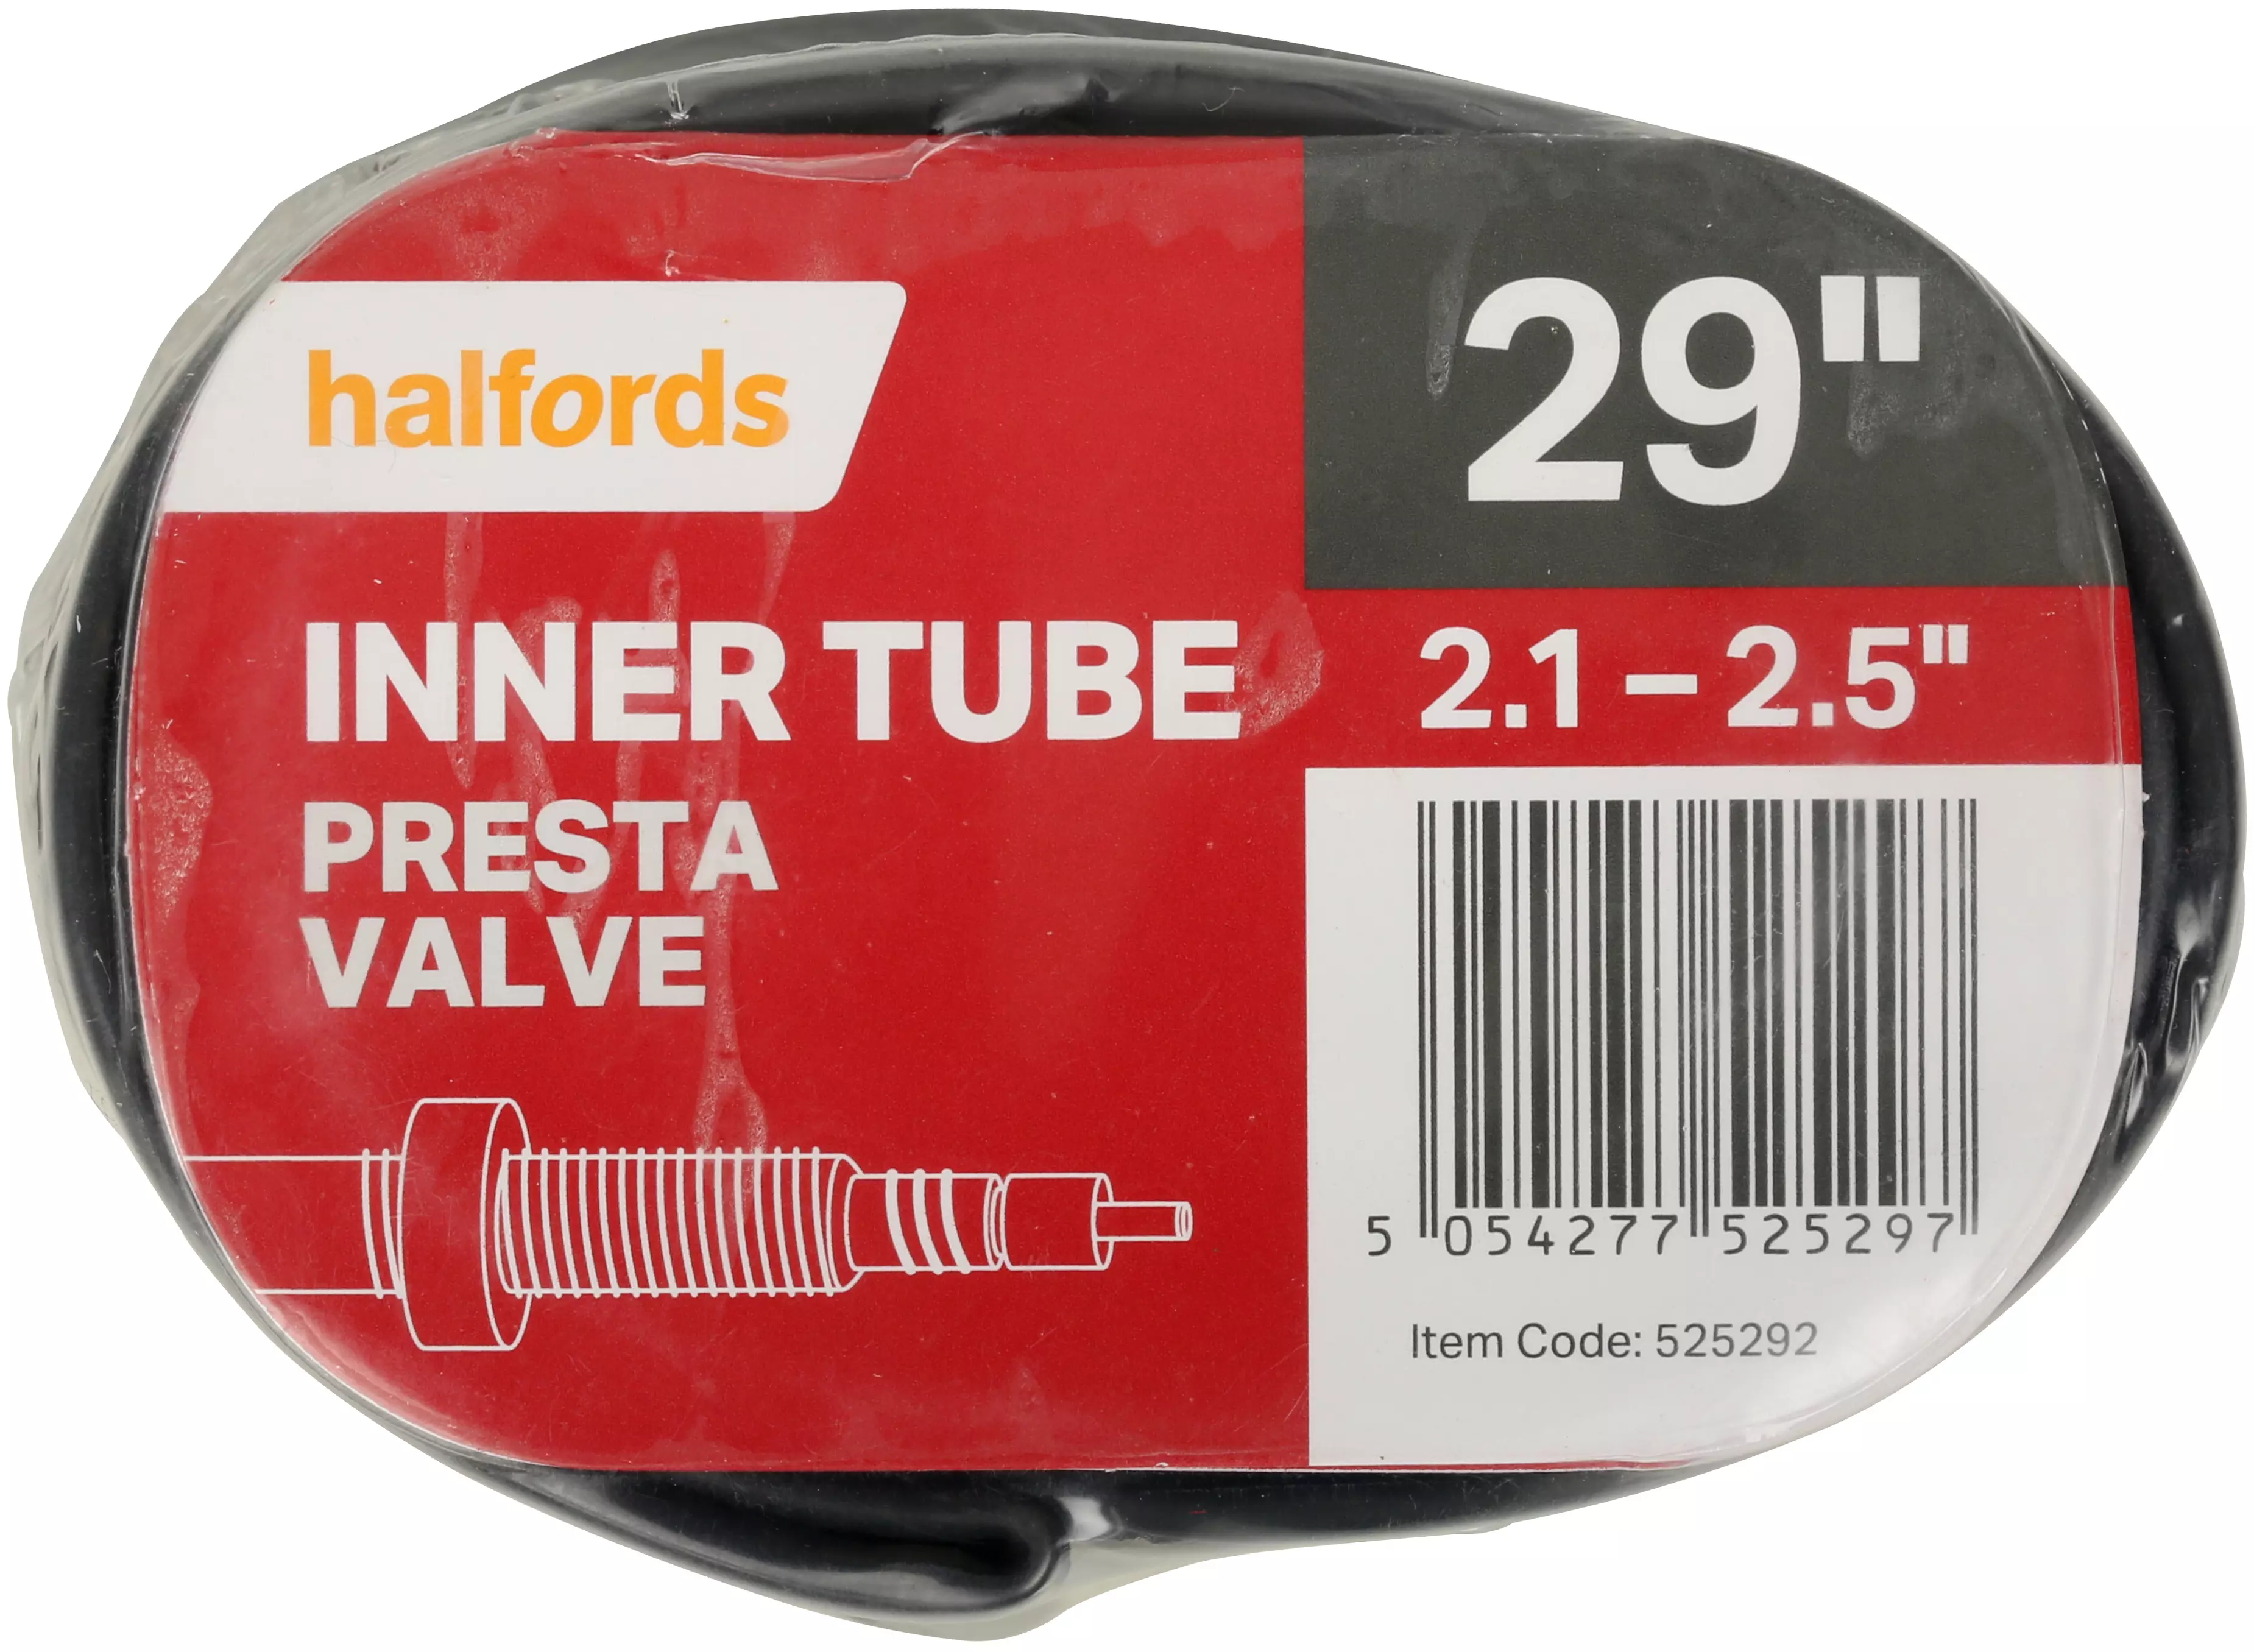 29 inch inner tube presta